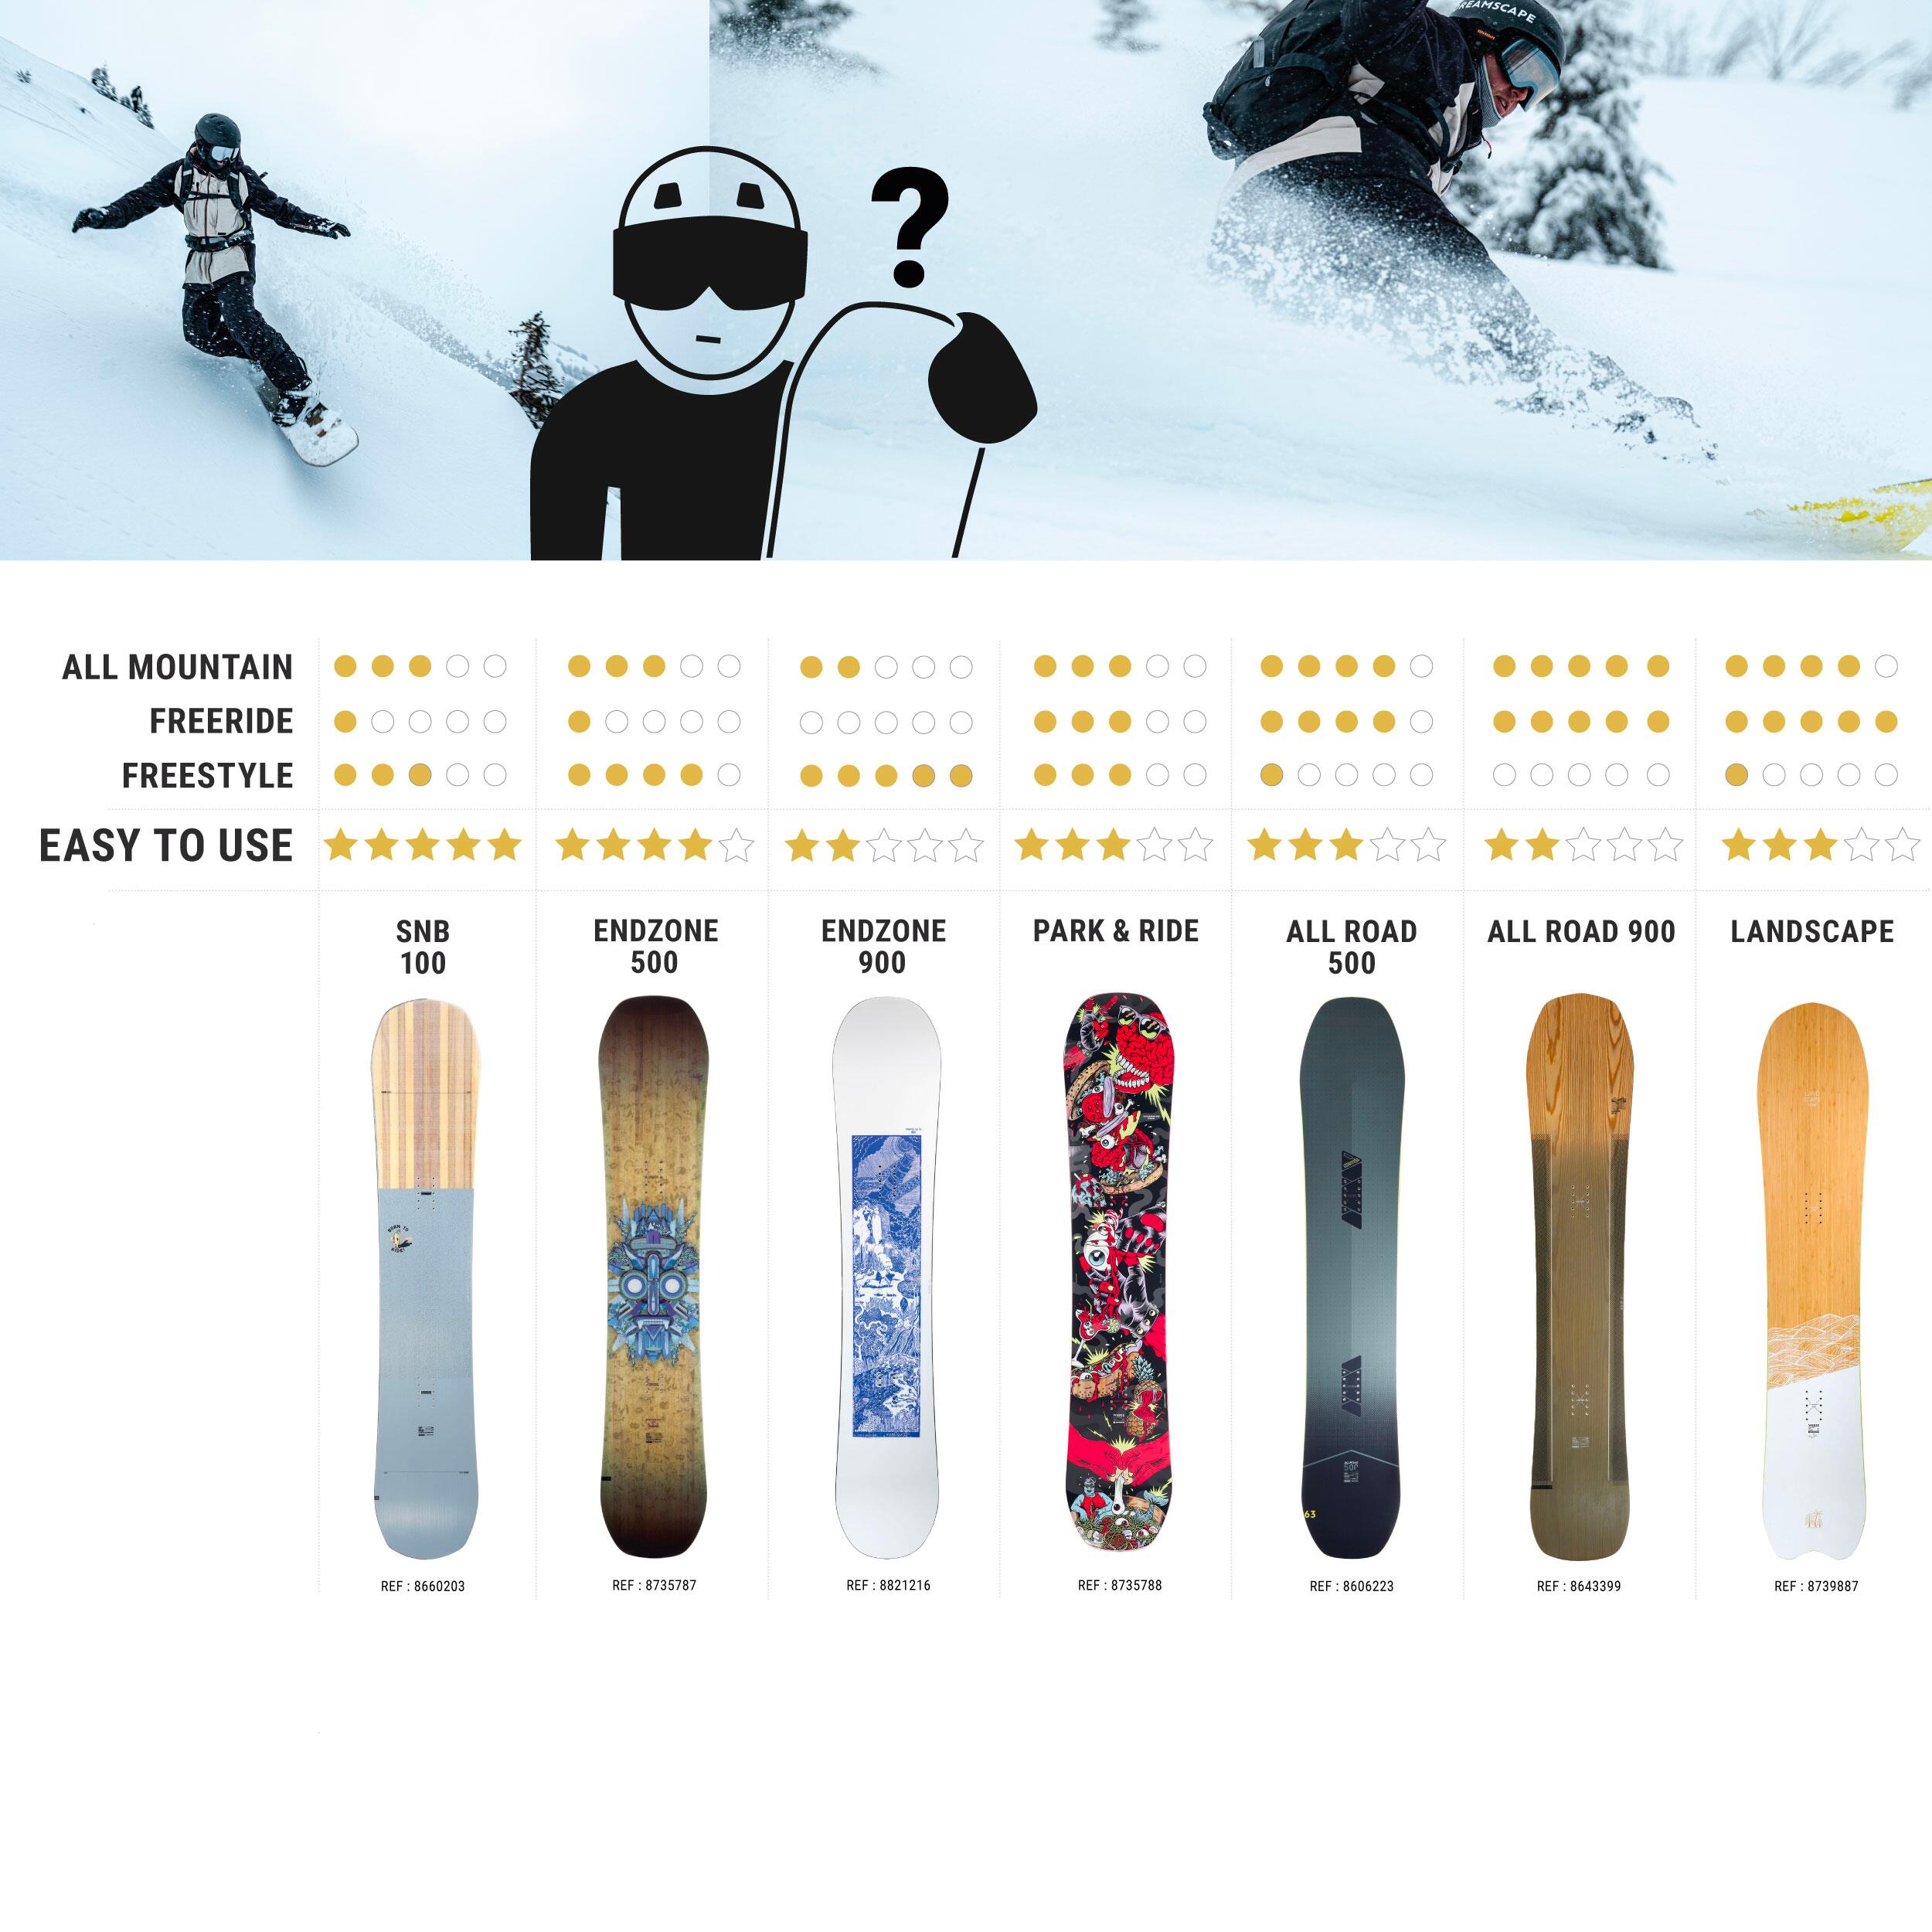 Freestyle snowboard – Endzone 900 PRO – Enzo Valax 11/14